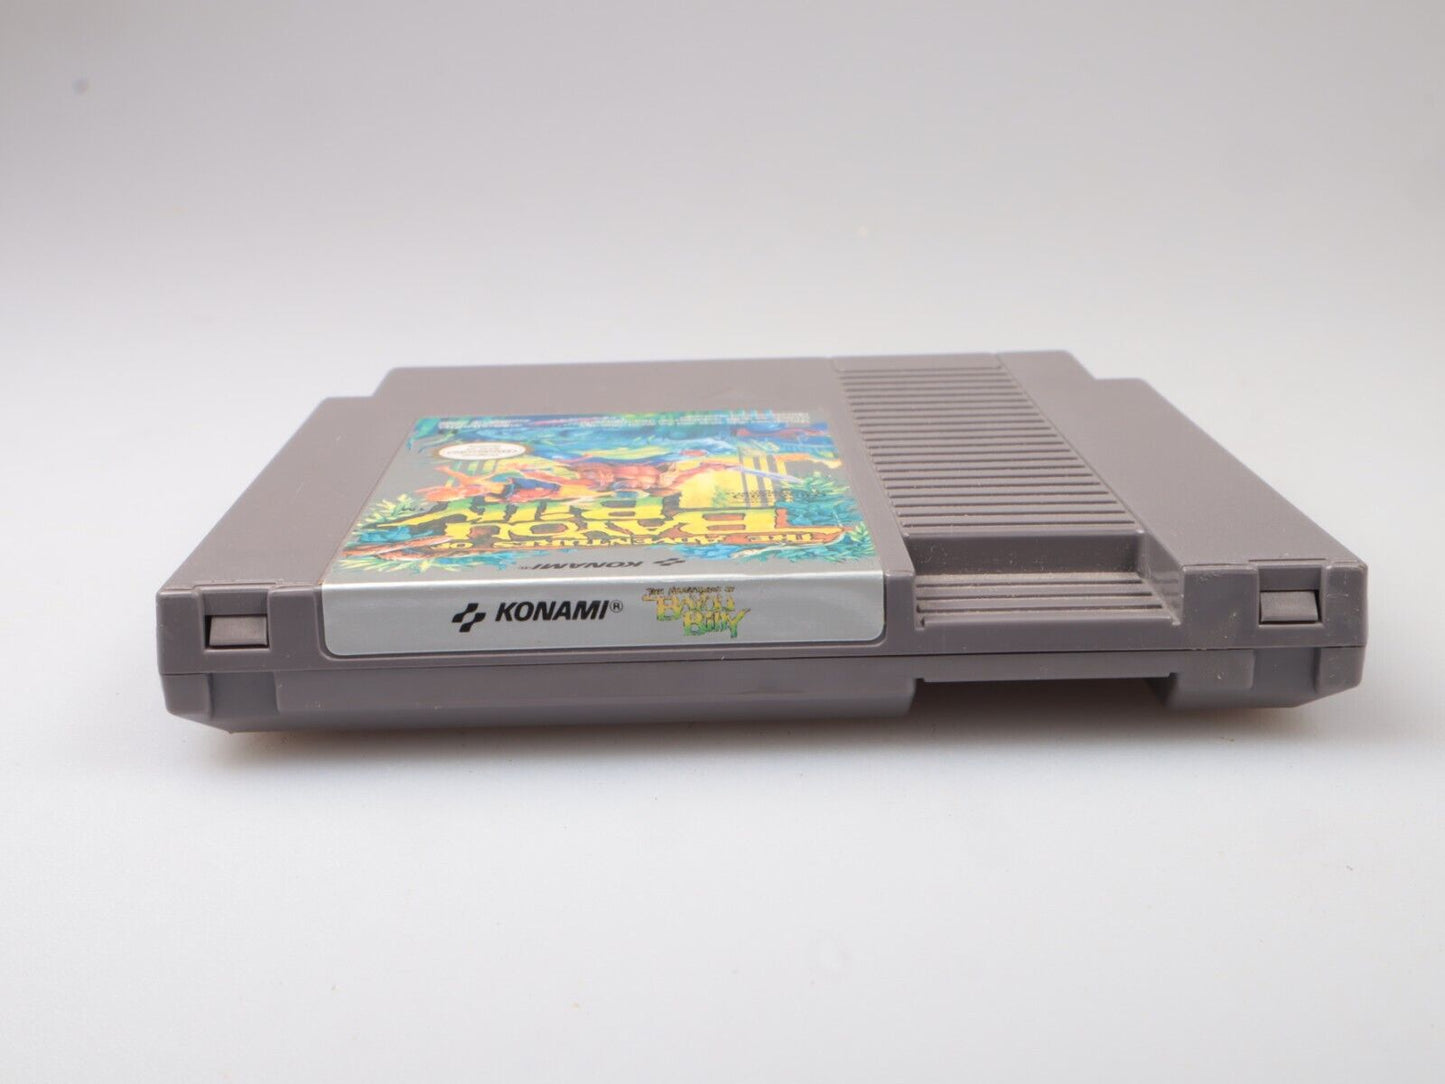 NES | Avonturen van Bayou Billy | FAH | Nintendo NES-cartridge 